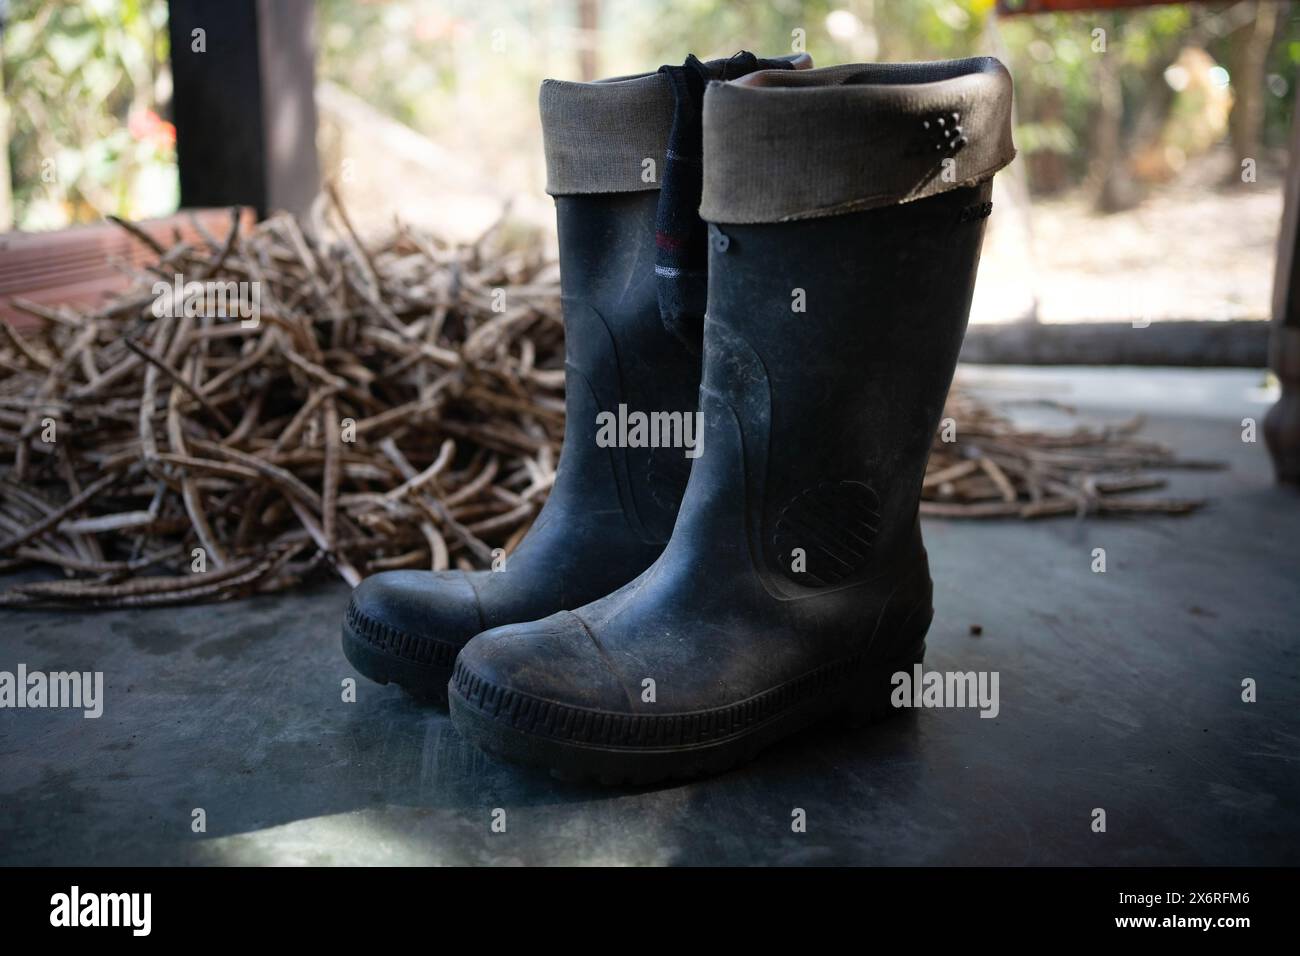 Gummistiefel für den Bauernhof. Schuhschuhe zum Schutz der Füße. Stockfoto